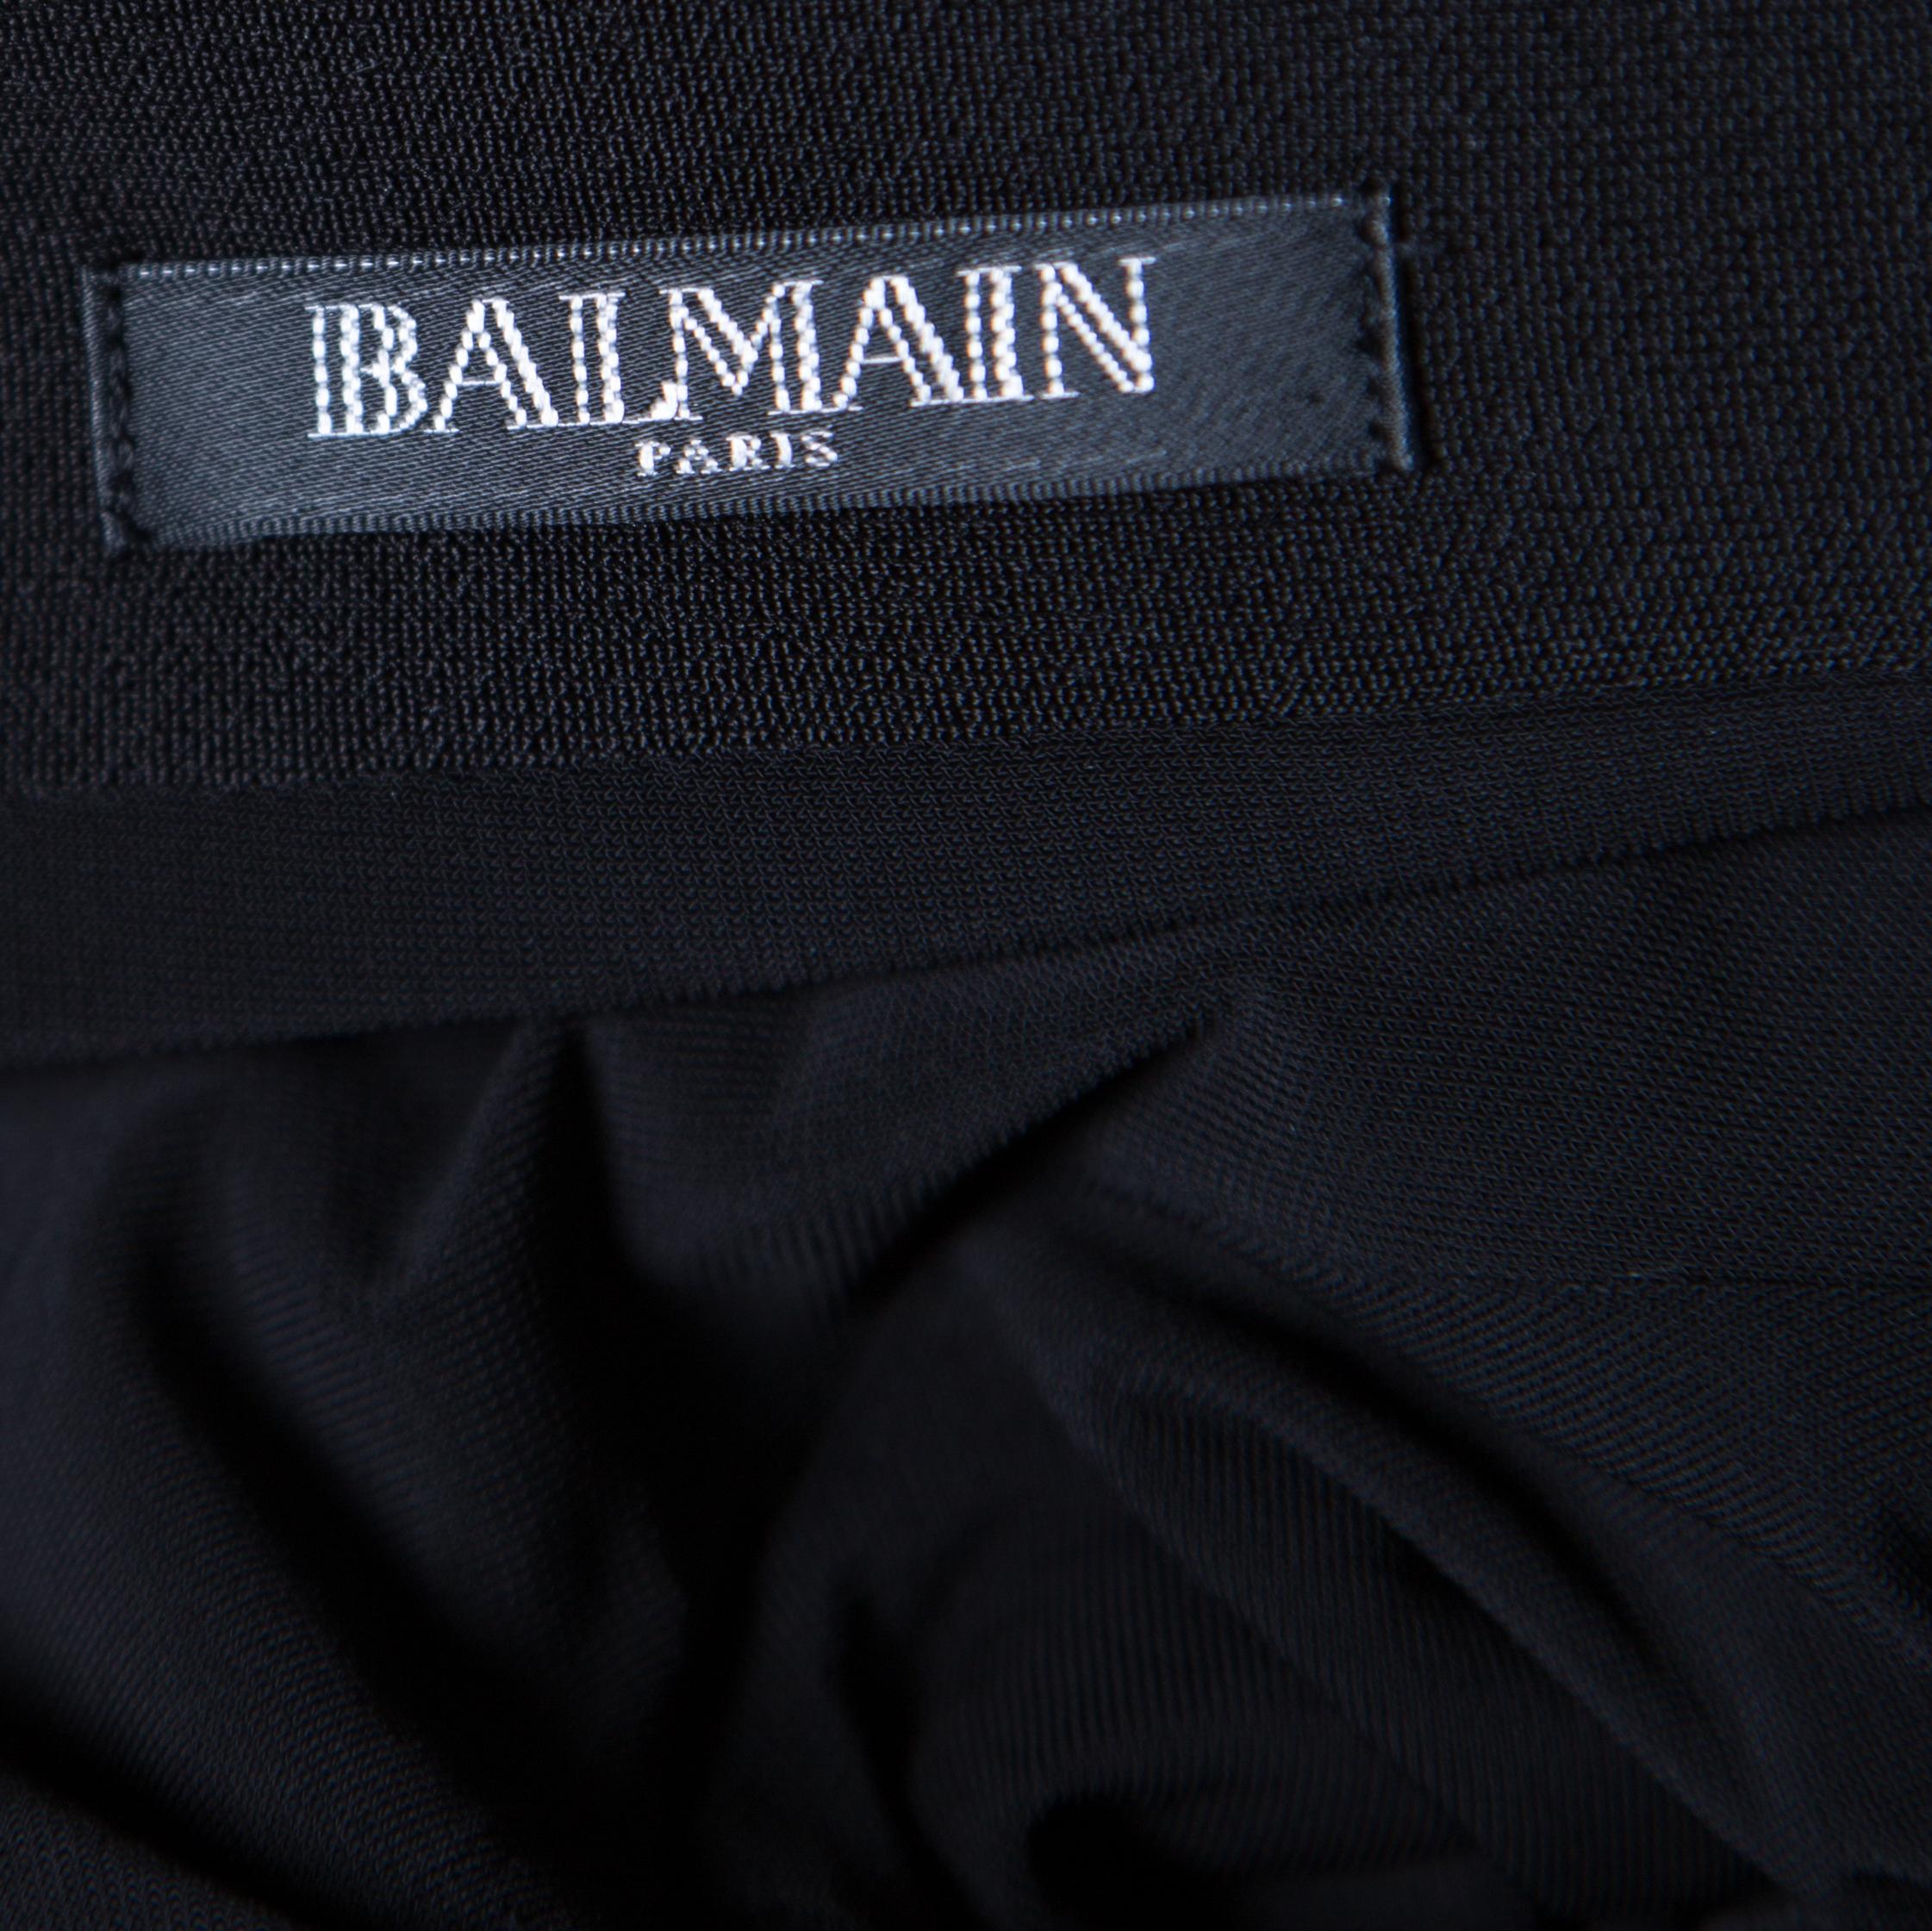 Women's Balmain Black Floral Embellished Plunge Back Neck Power Shoulder Dress M